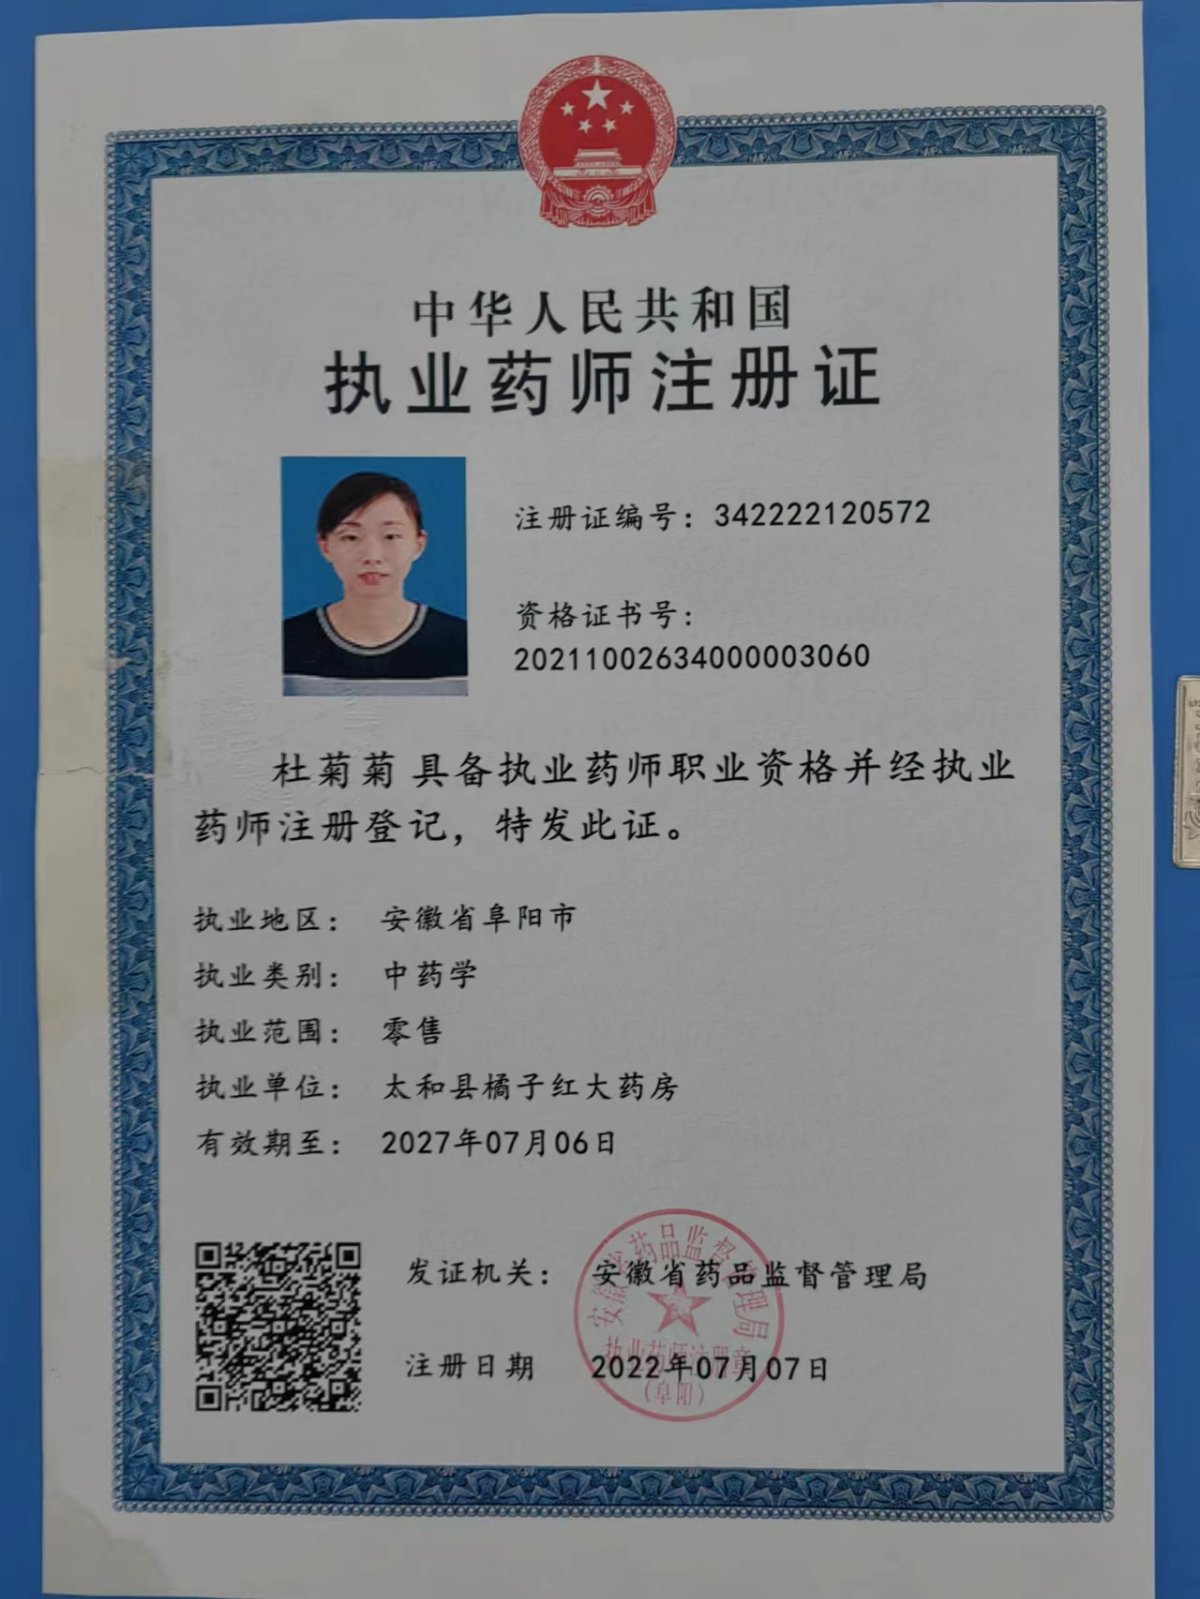 太和县橘子红大药房药师资质(1)证书:342222120572